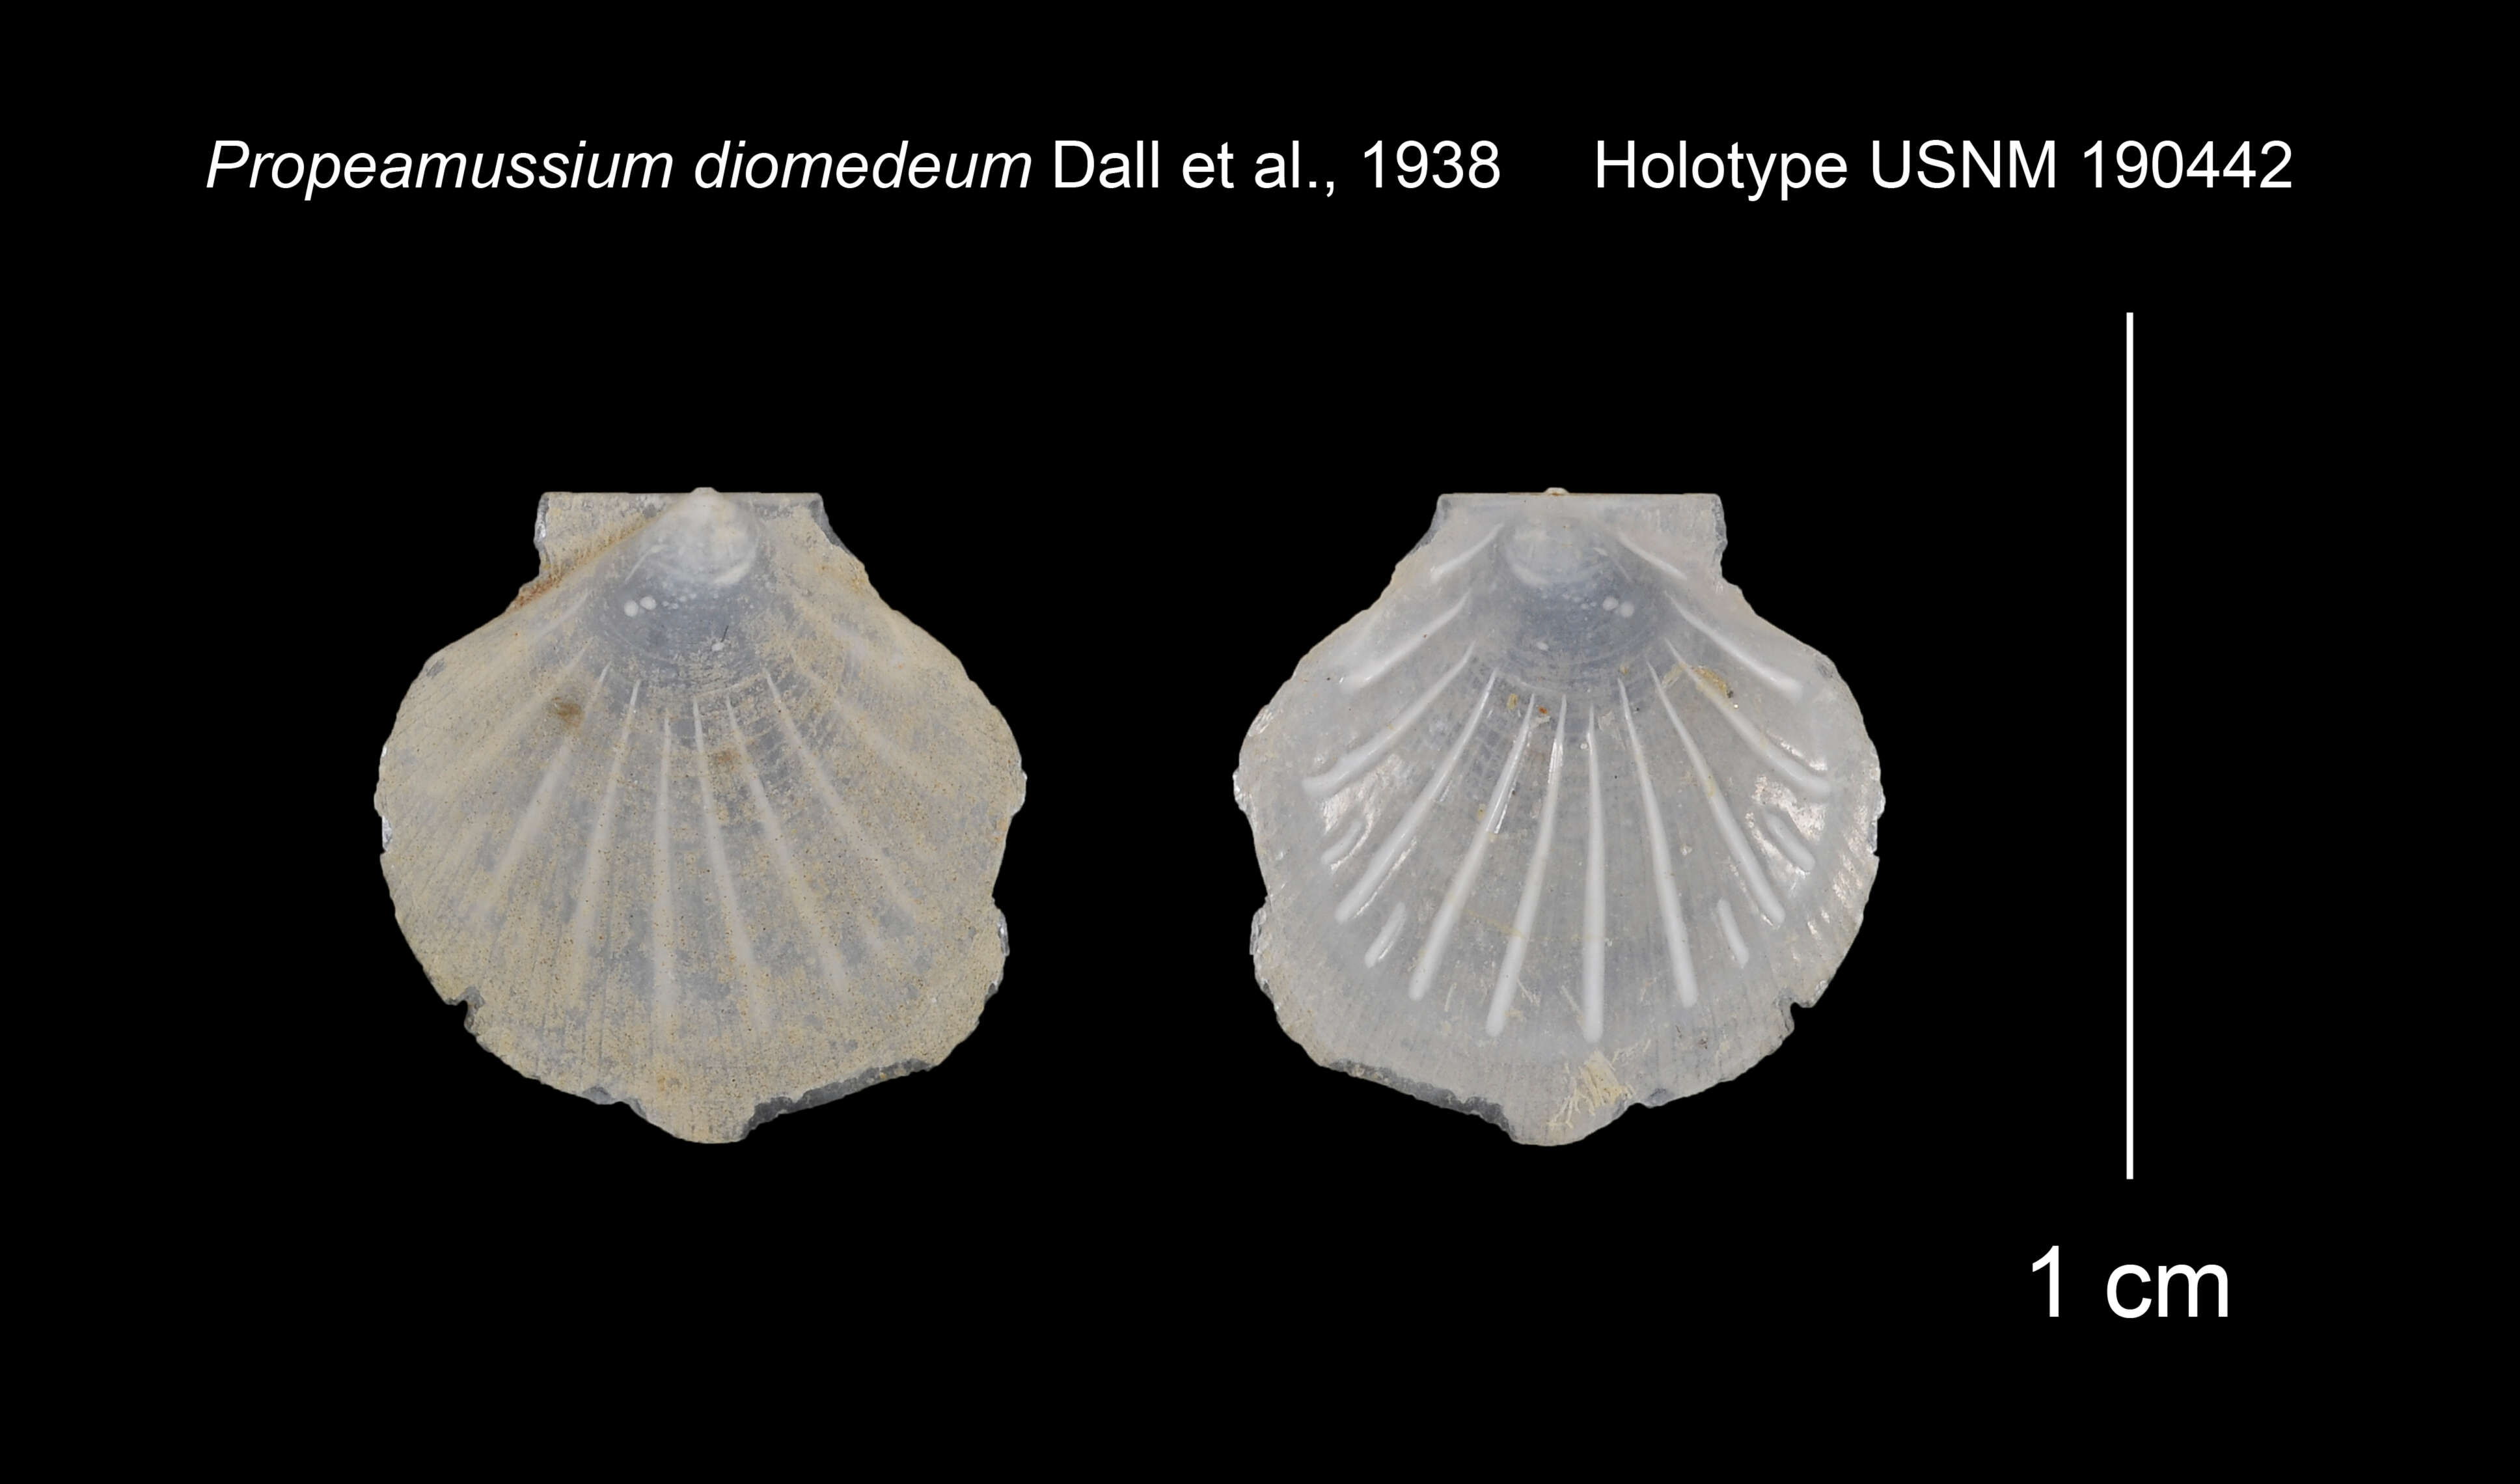 Sivun Parvamussium diomedeum (Dall, Bartsch & Rehder 1938) kuva